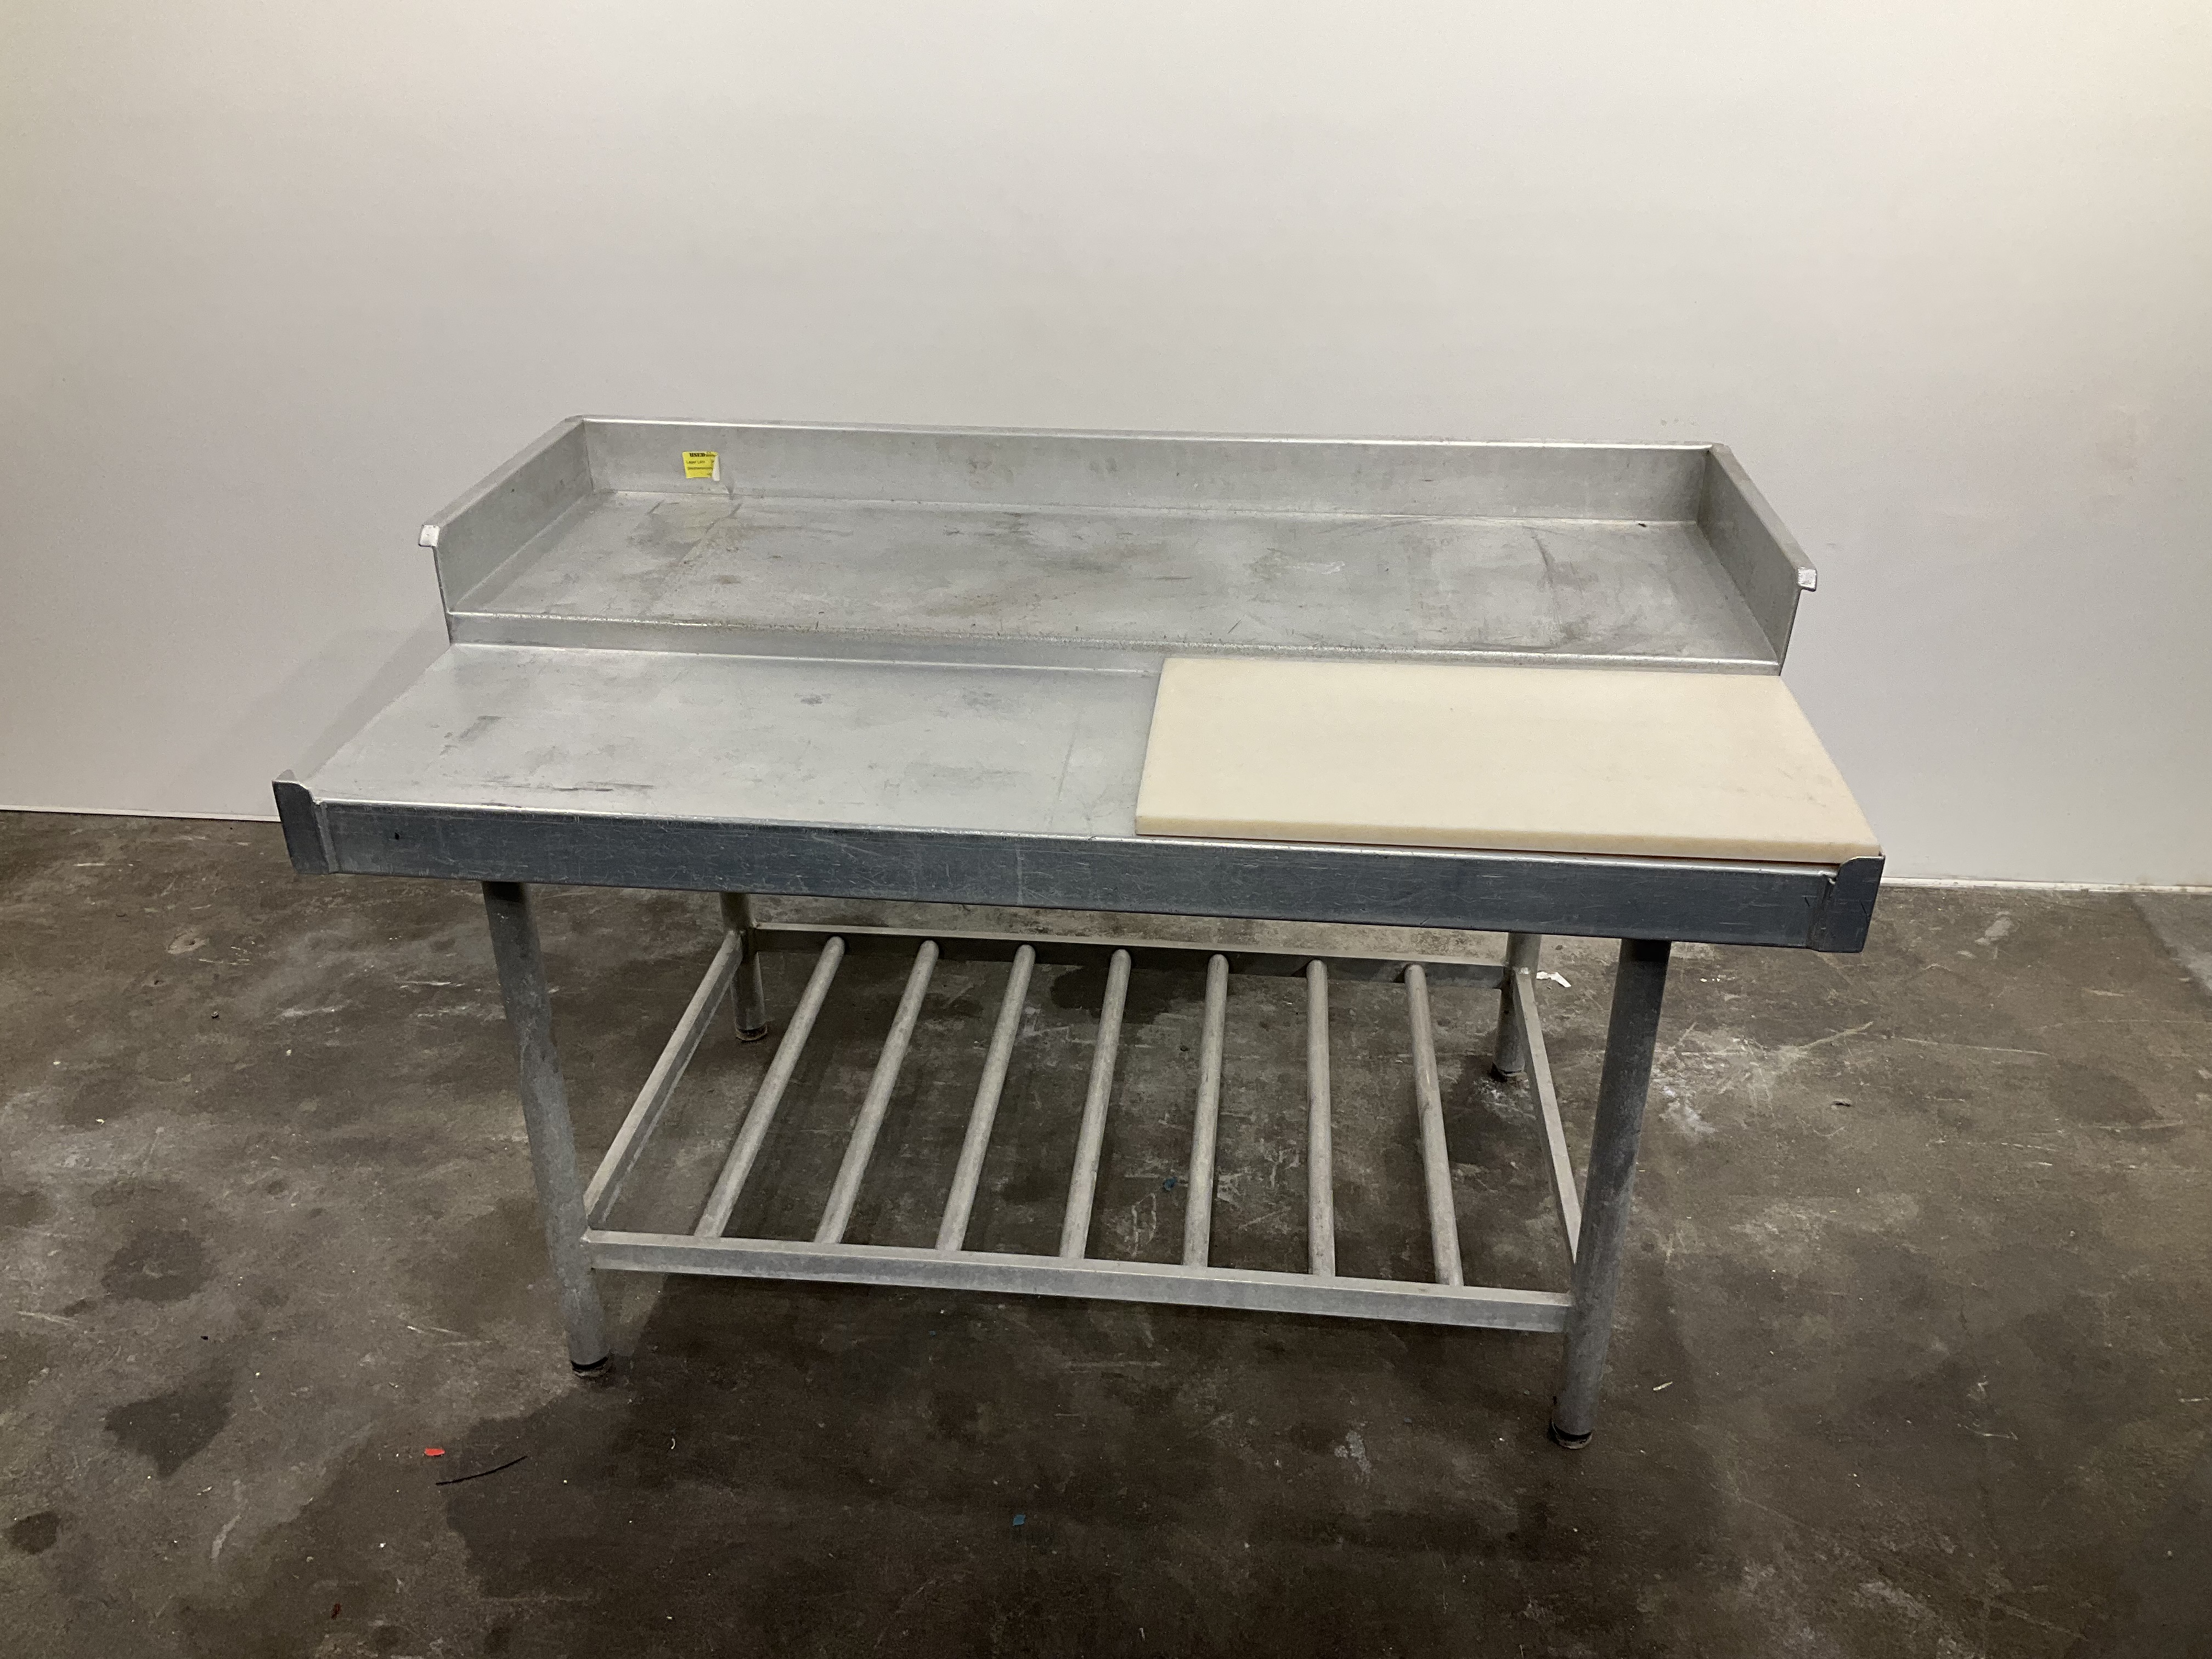 Aluminium worktop, used